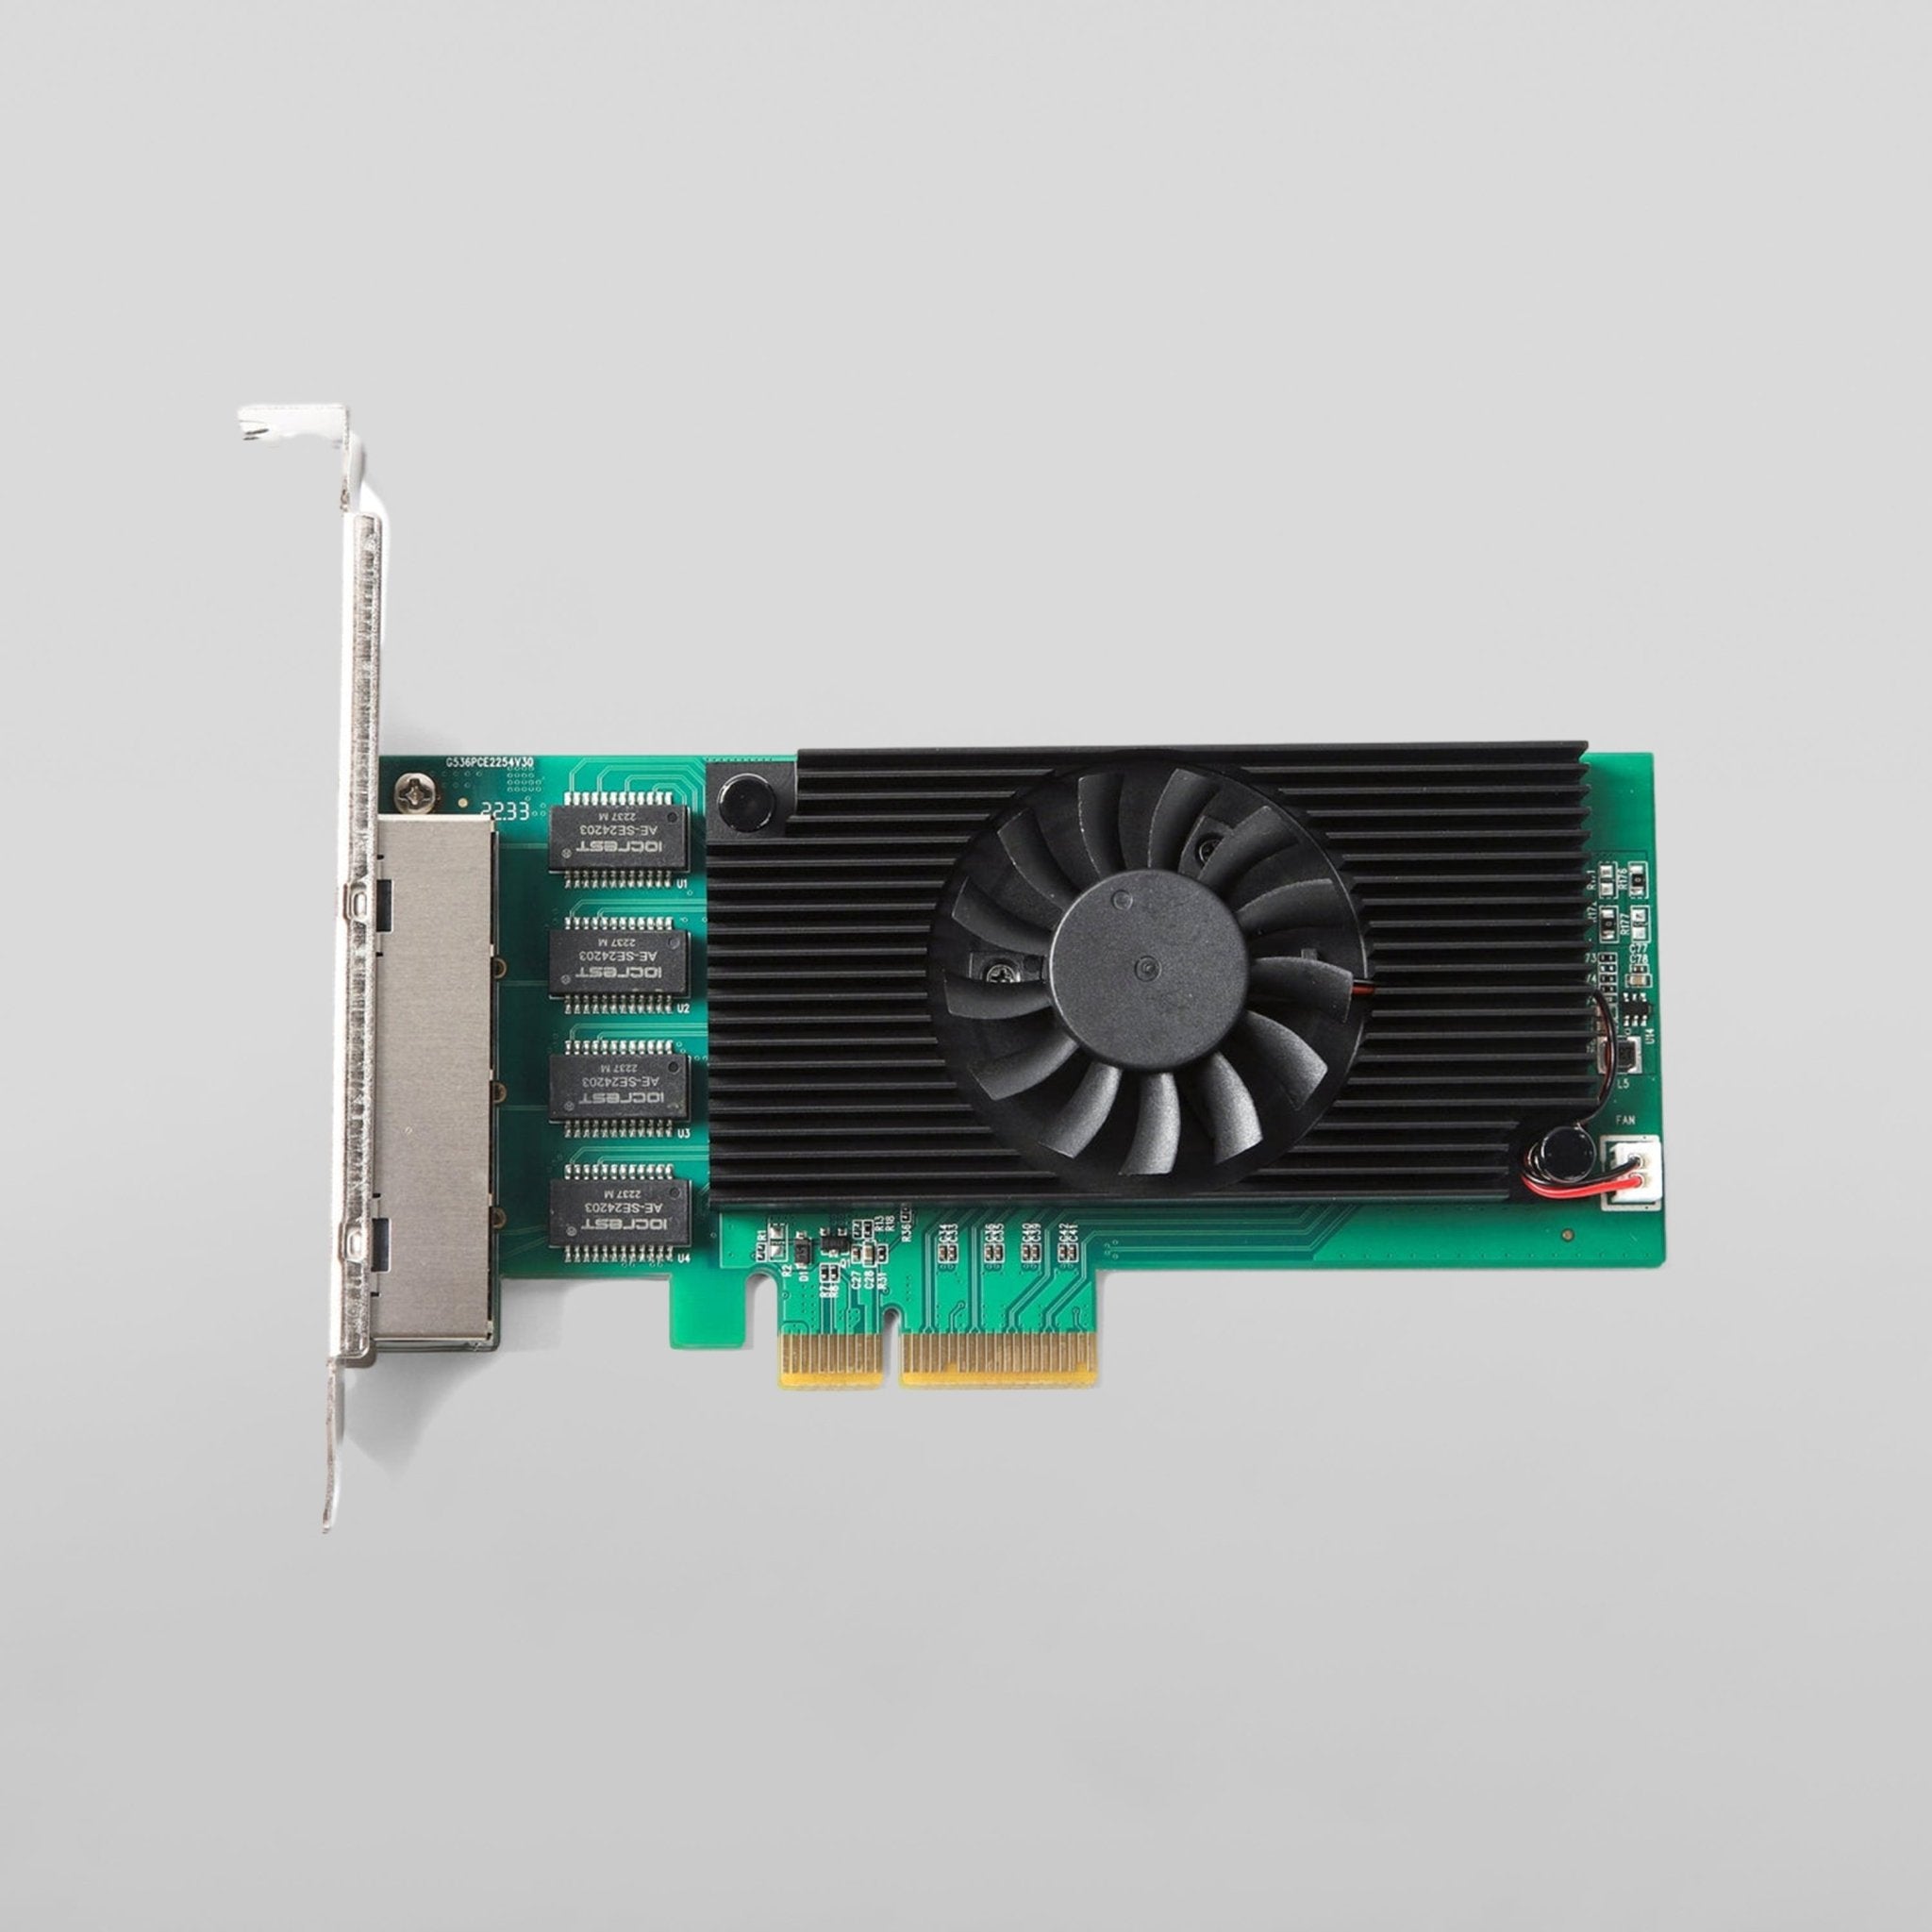 Intel AX210 WiFi 6E PCIe Card